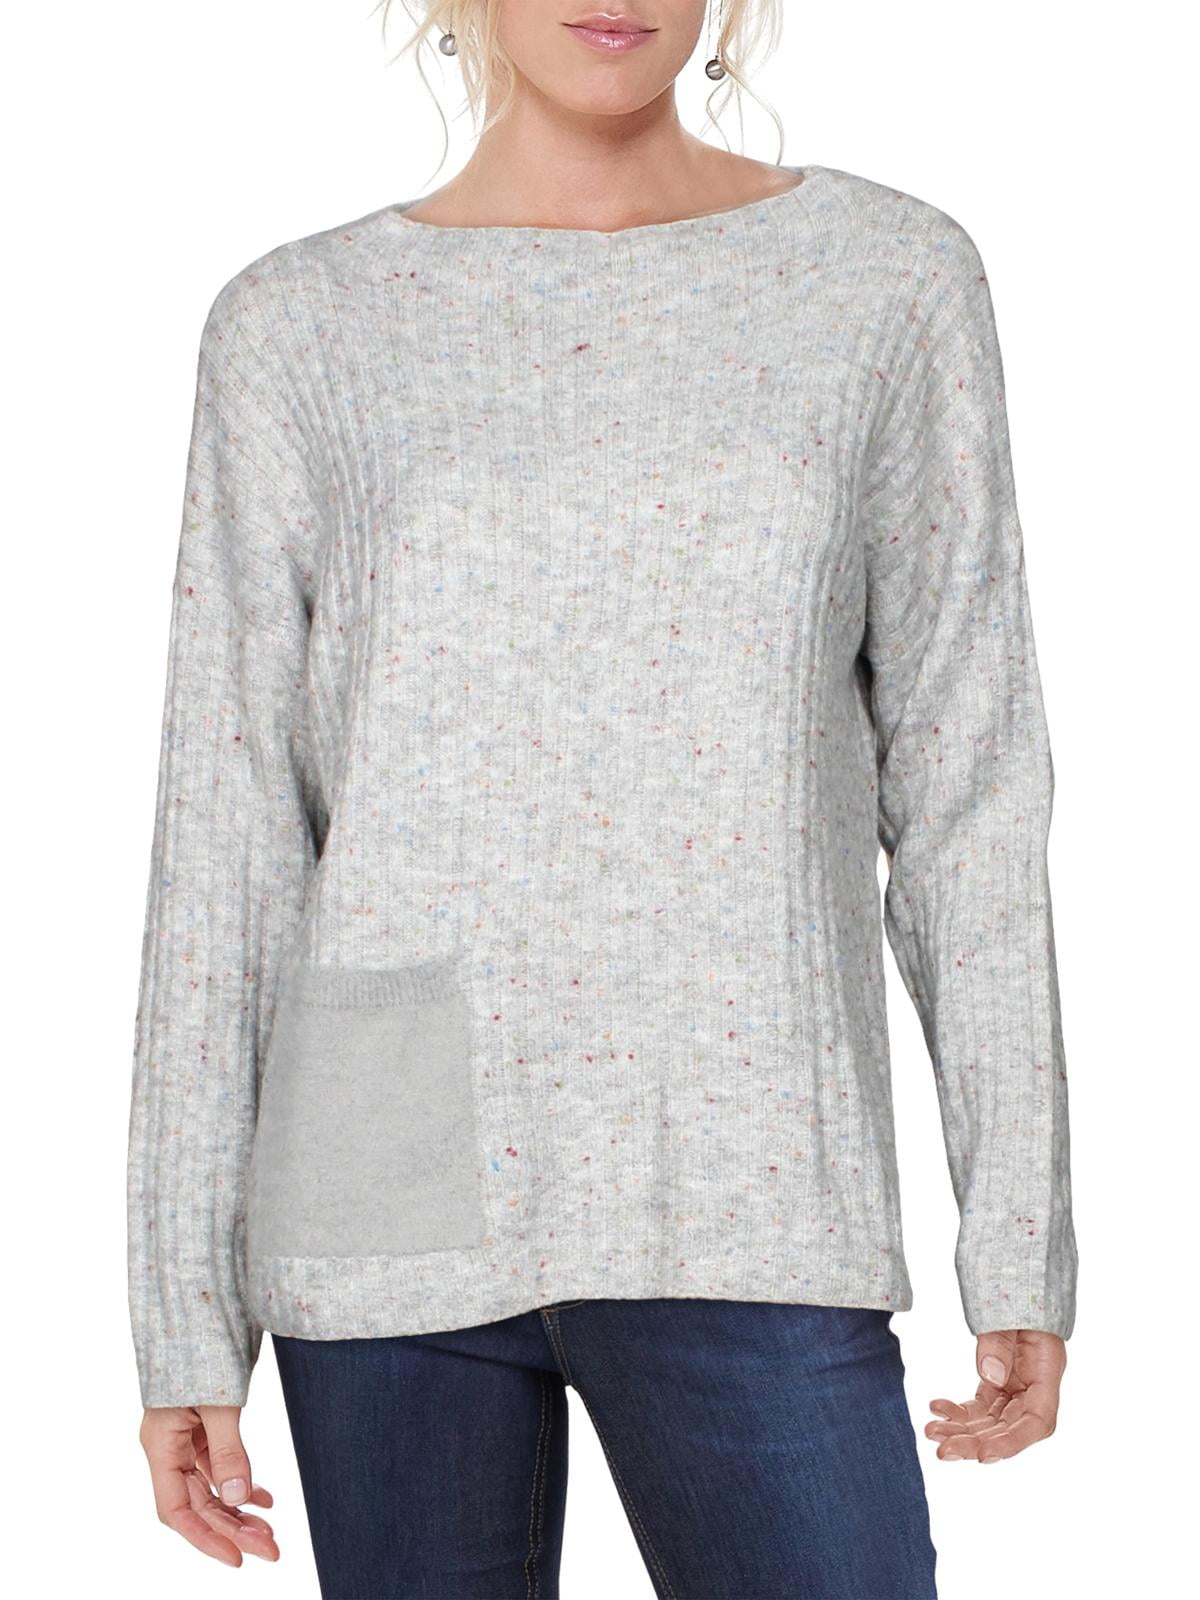 Maude Vivante Womens Ribbed V-Neck Sweater Gray S - Walmart.com